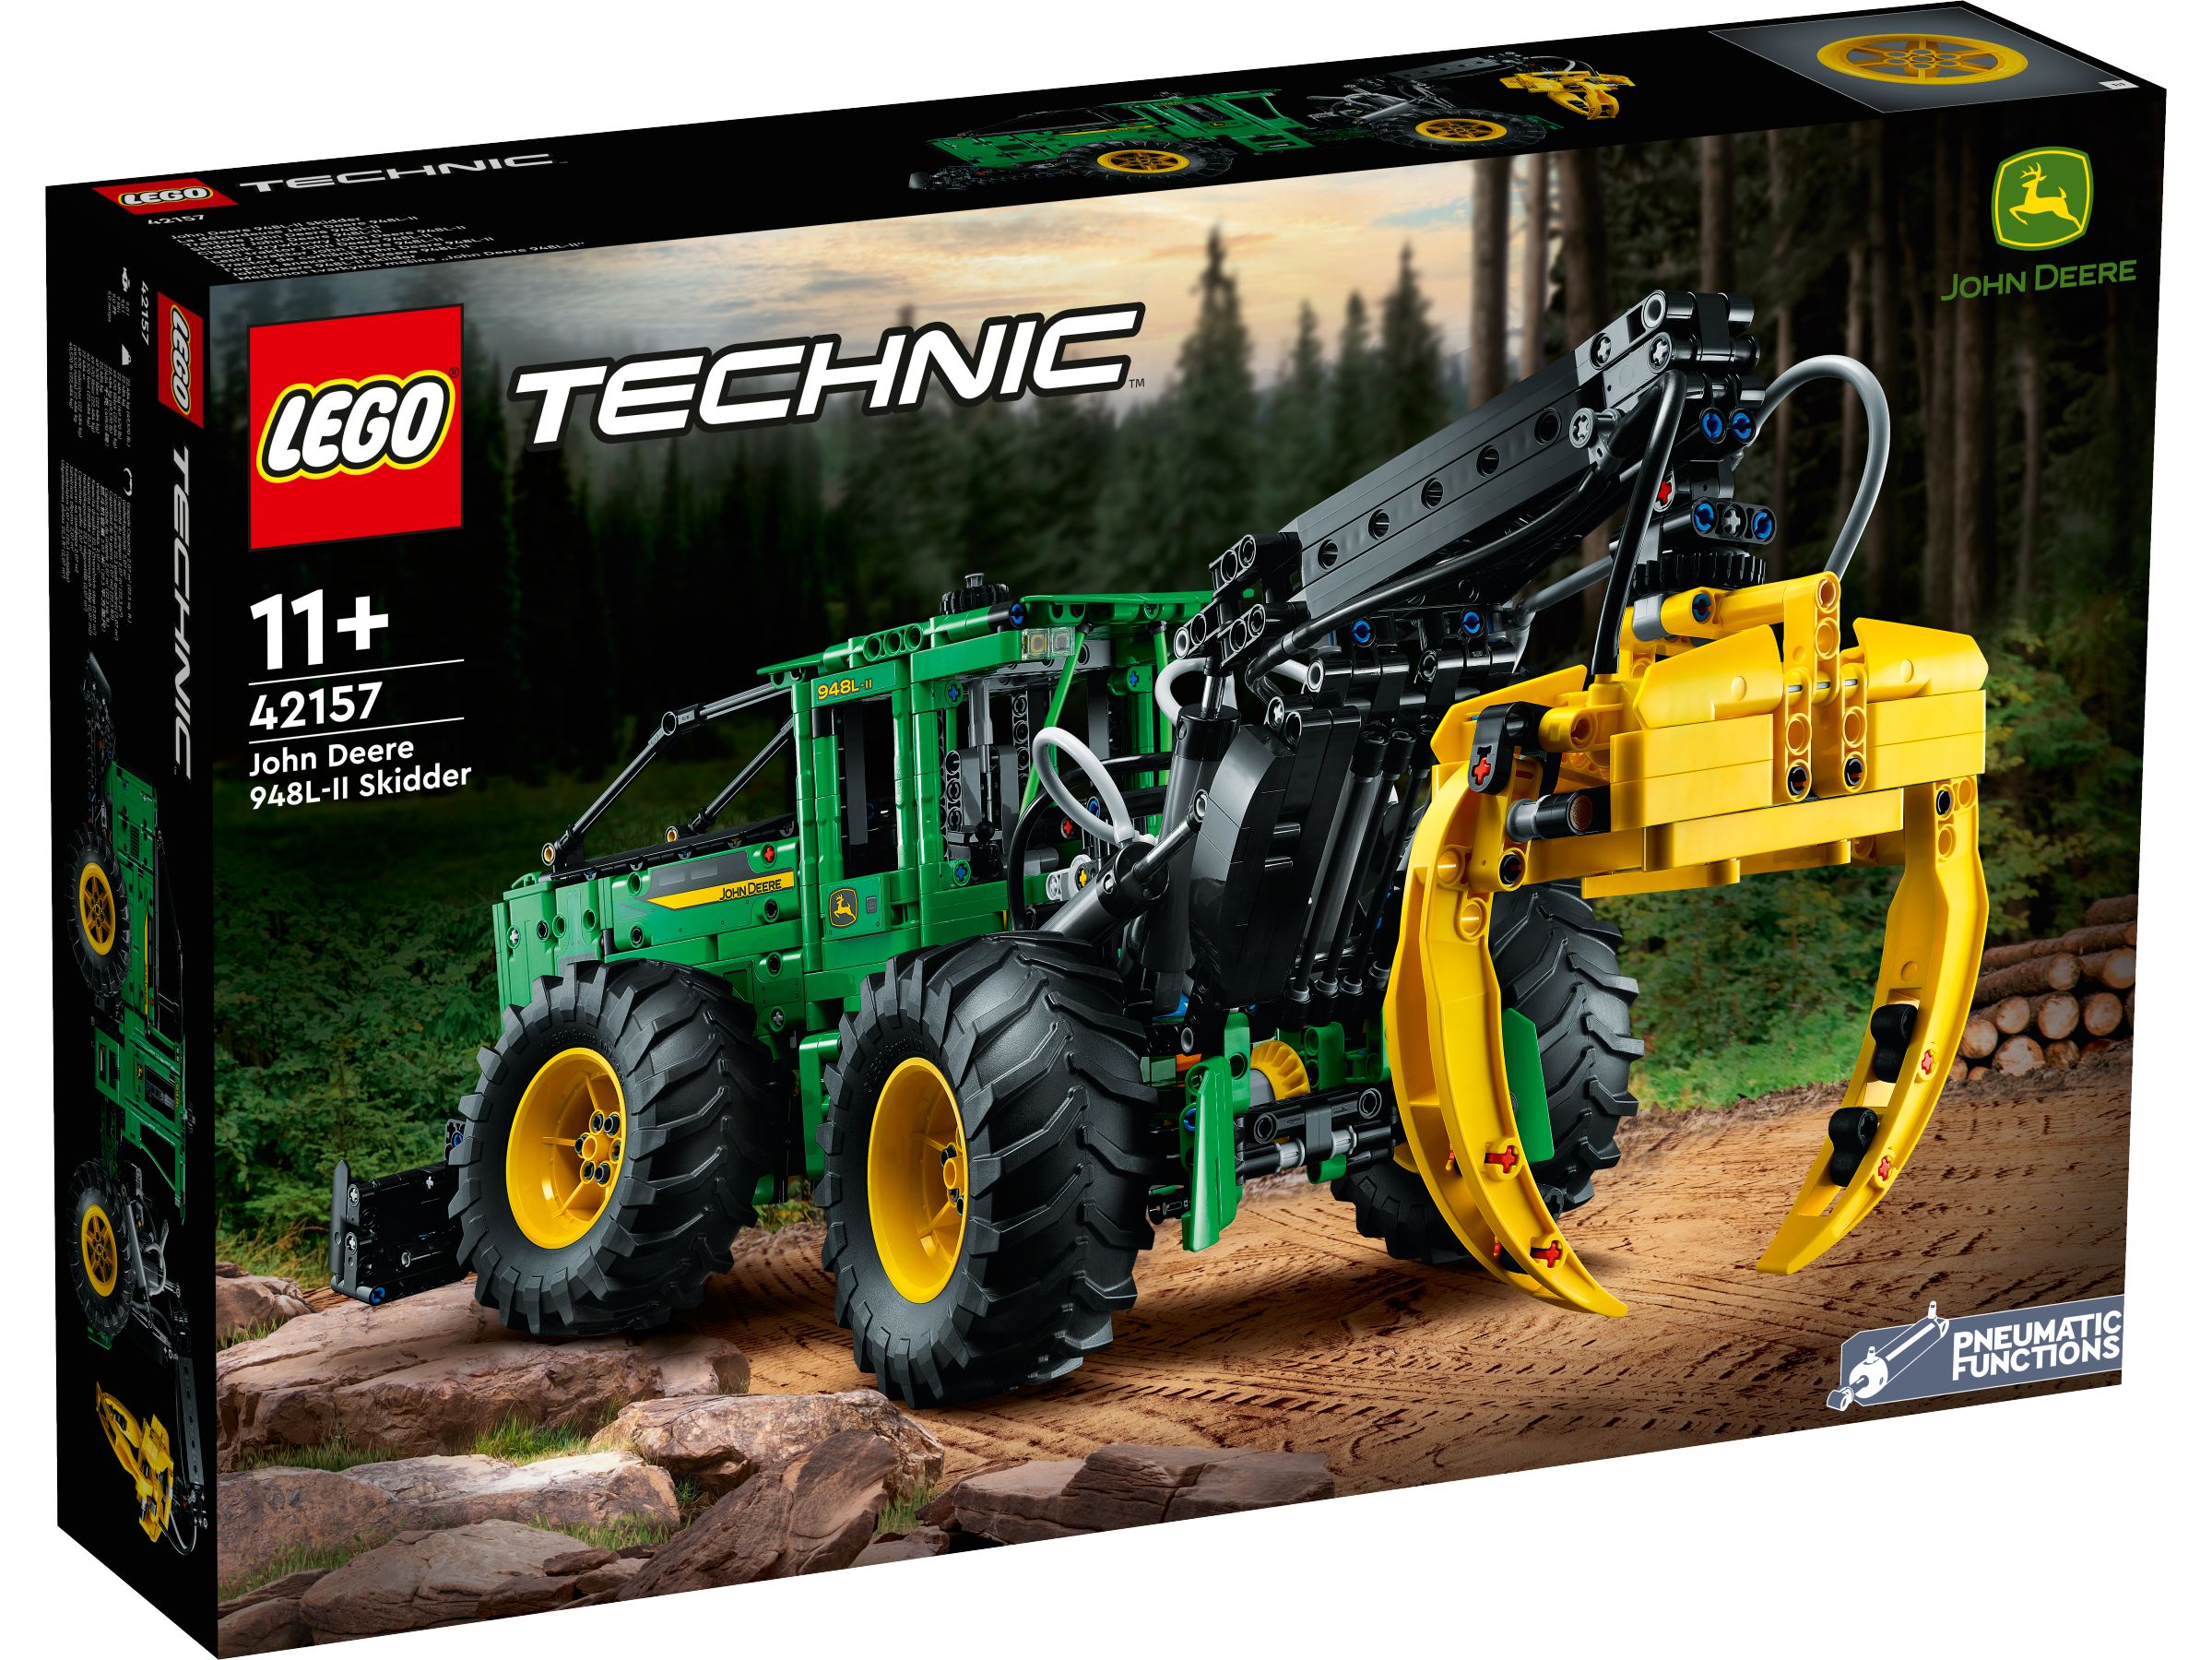 LEGO Technic 42157 John Deere 948L-II Skidder LEGO_42157_Box1_v29.jpg